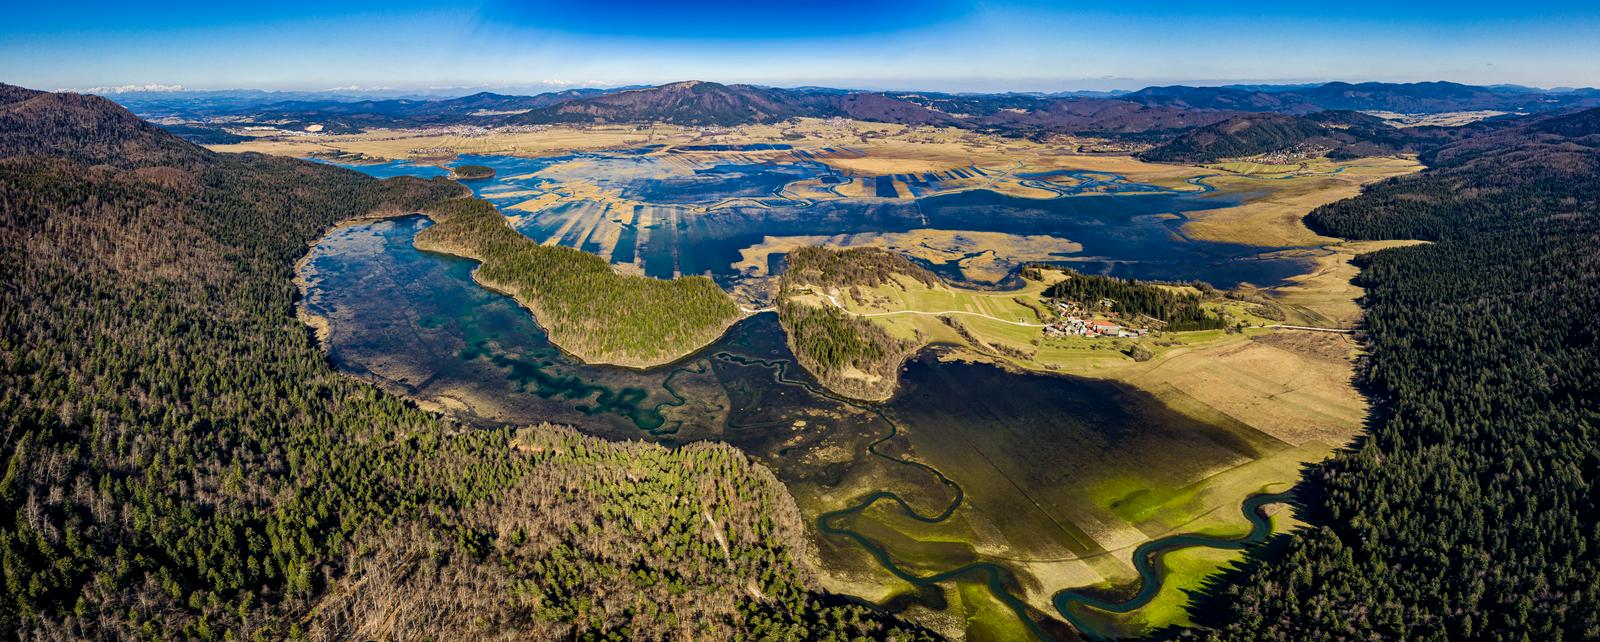 Na lanski zmagovalni fotografiji Iz zraka je Žan Kafol upodobil Cerkniško jezero. Foto: Žan Kafol